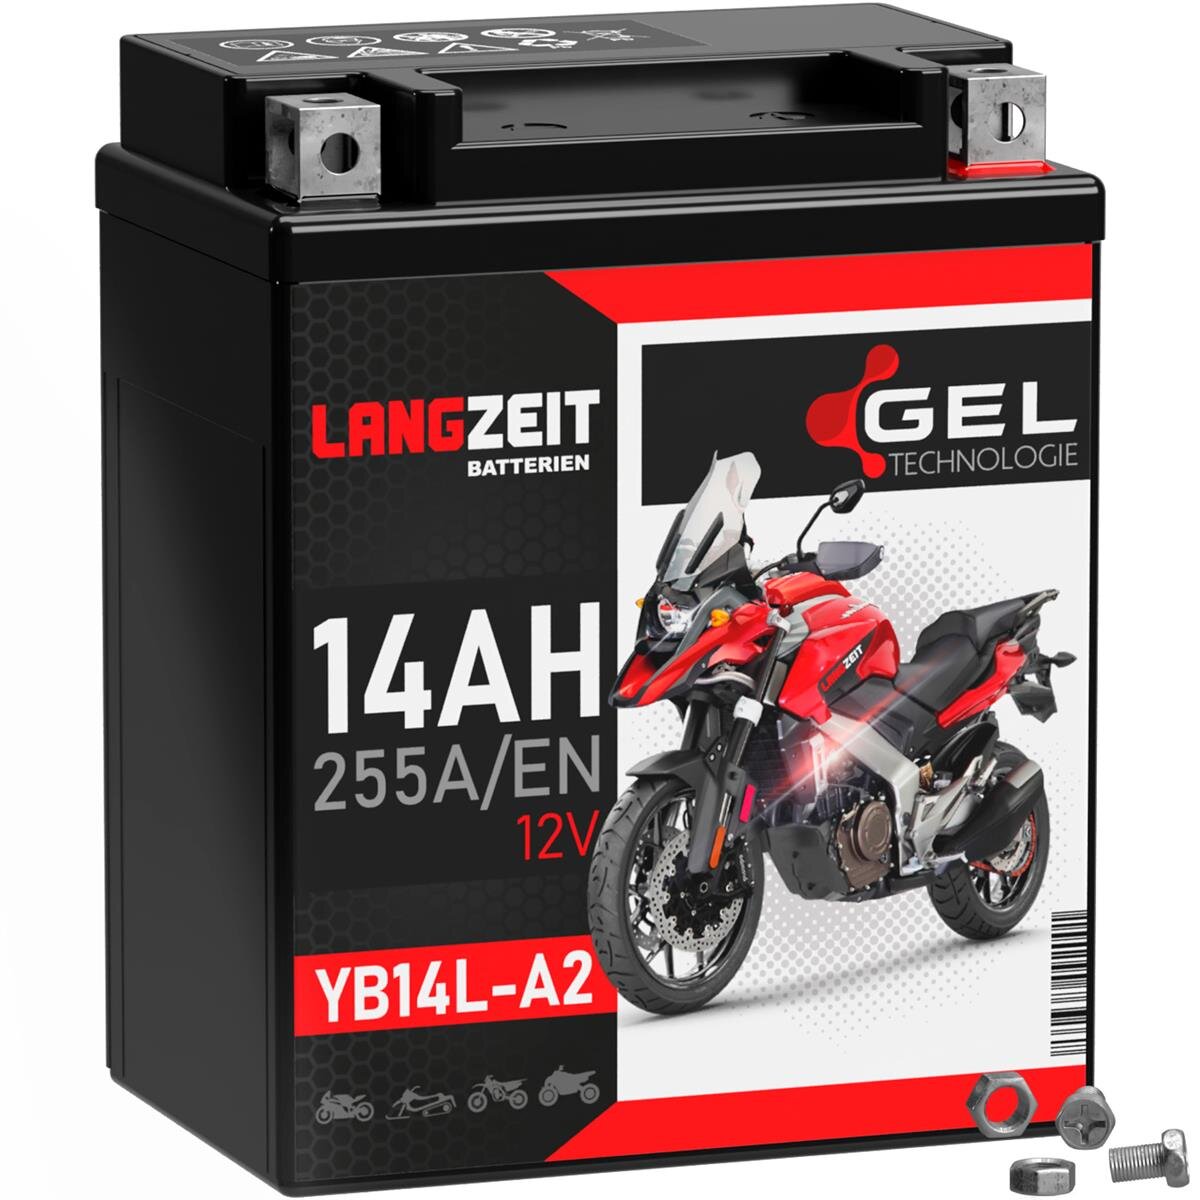 Langzeit Gel Motorradbatterie YB14L-A2 14Ah 12V, 48,99 €